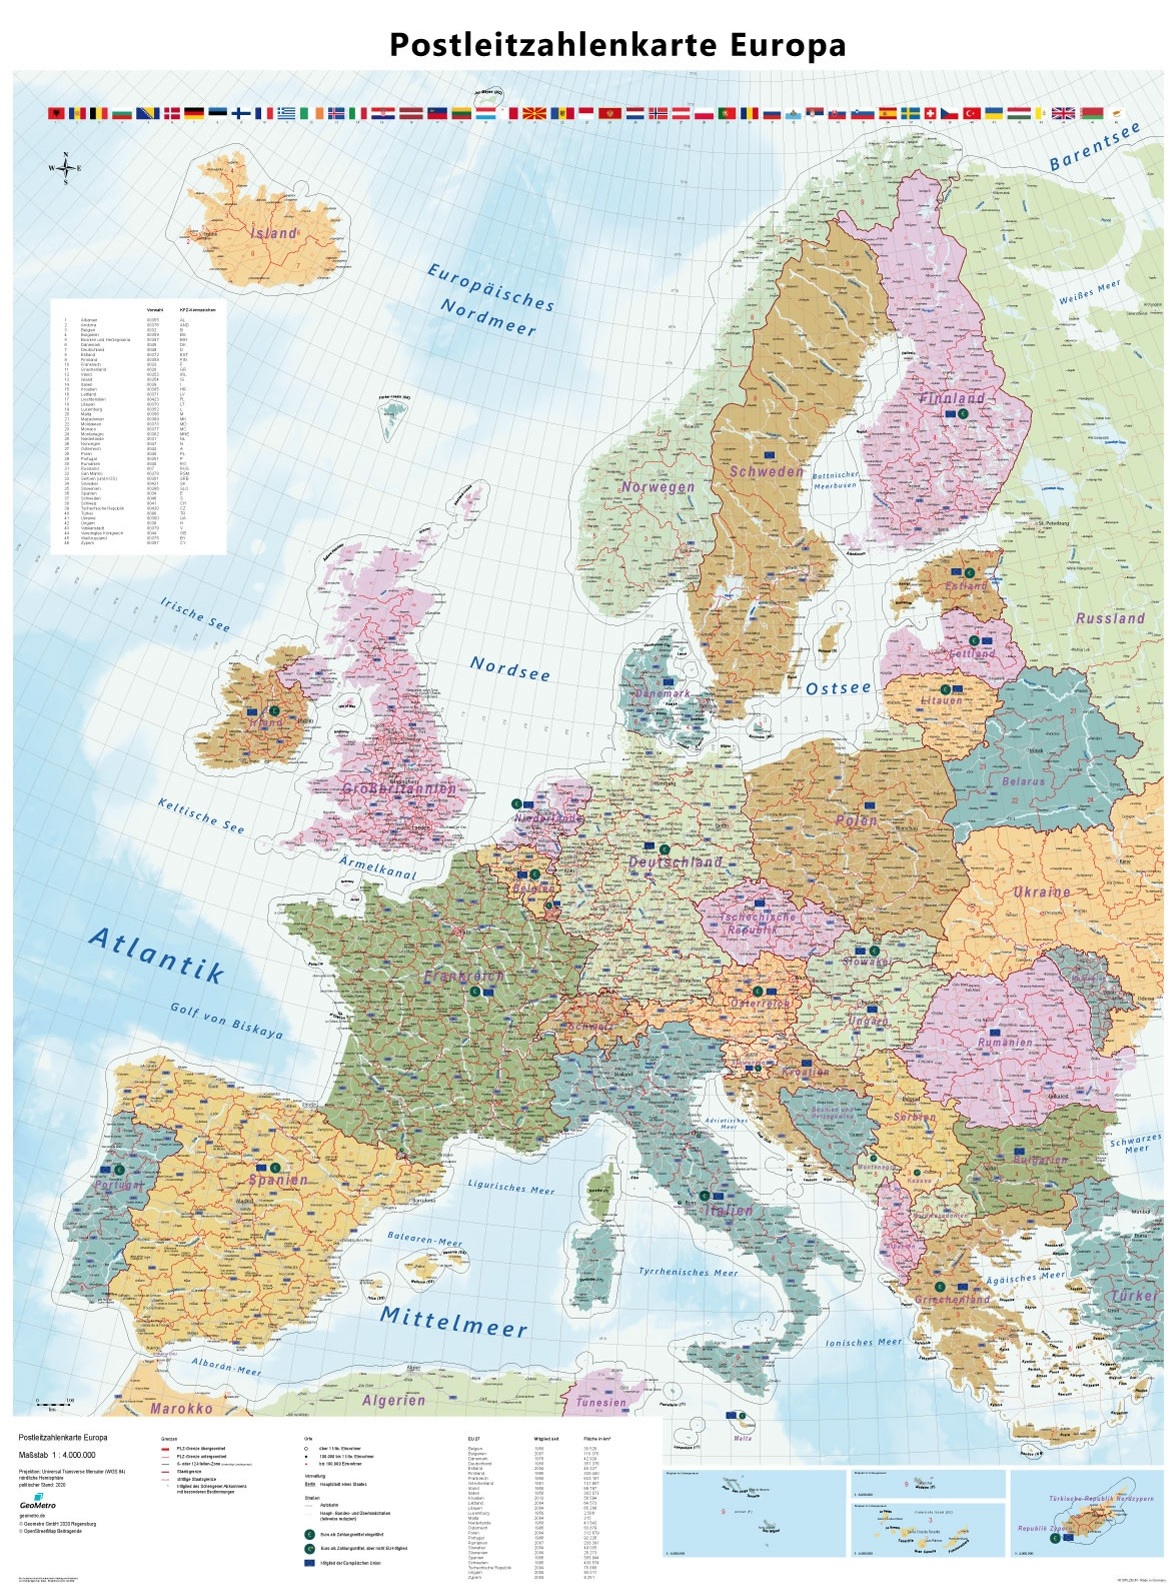 Postleitzahlenkarte Europa mit beidseitiger Laminierung - 2020